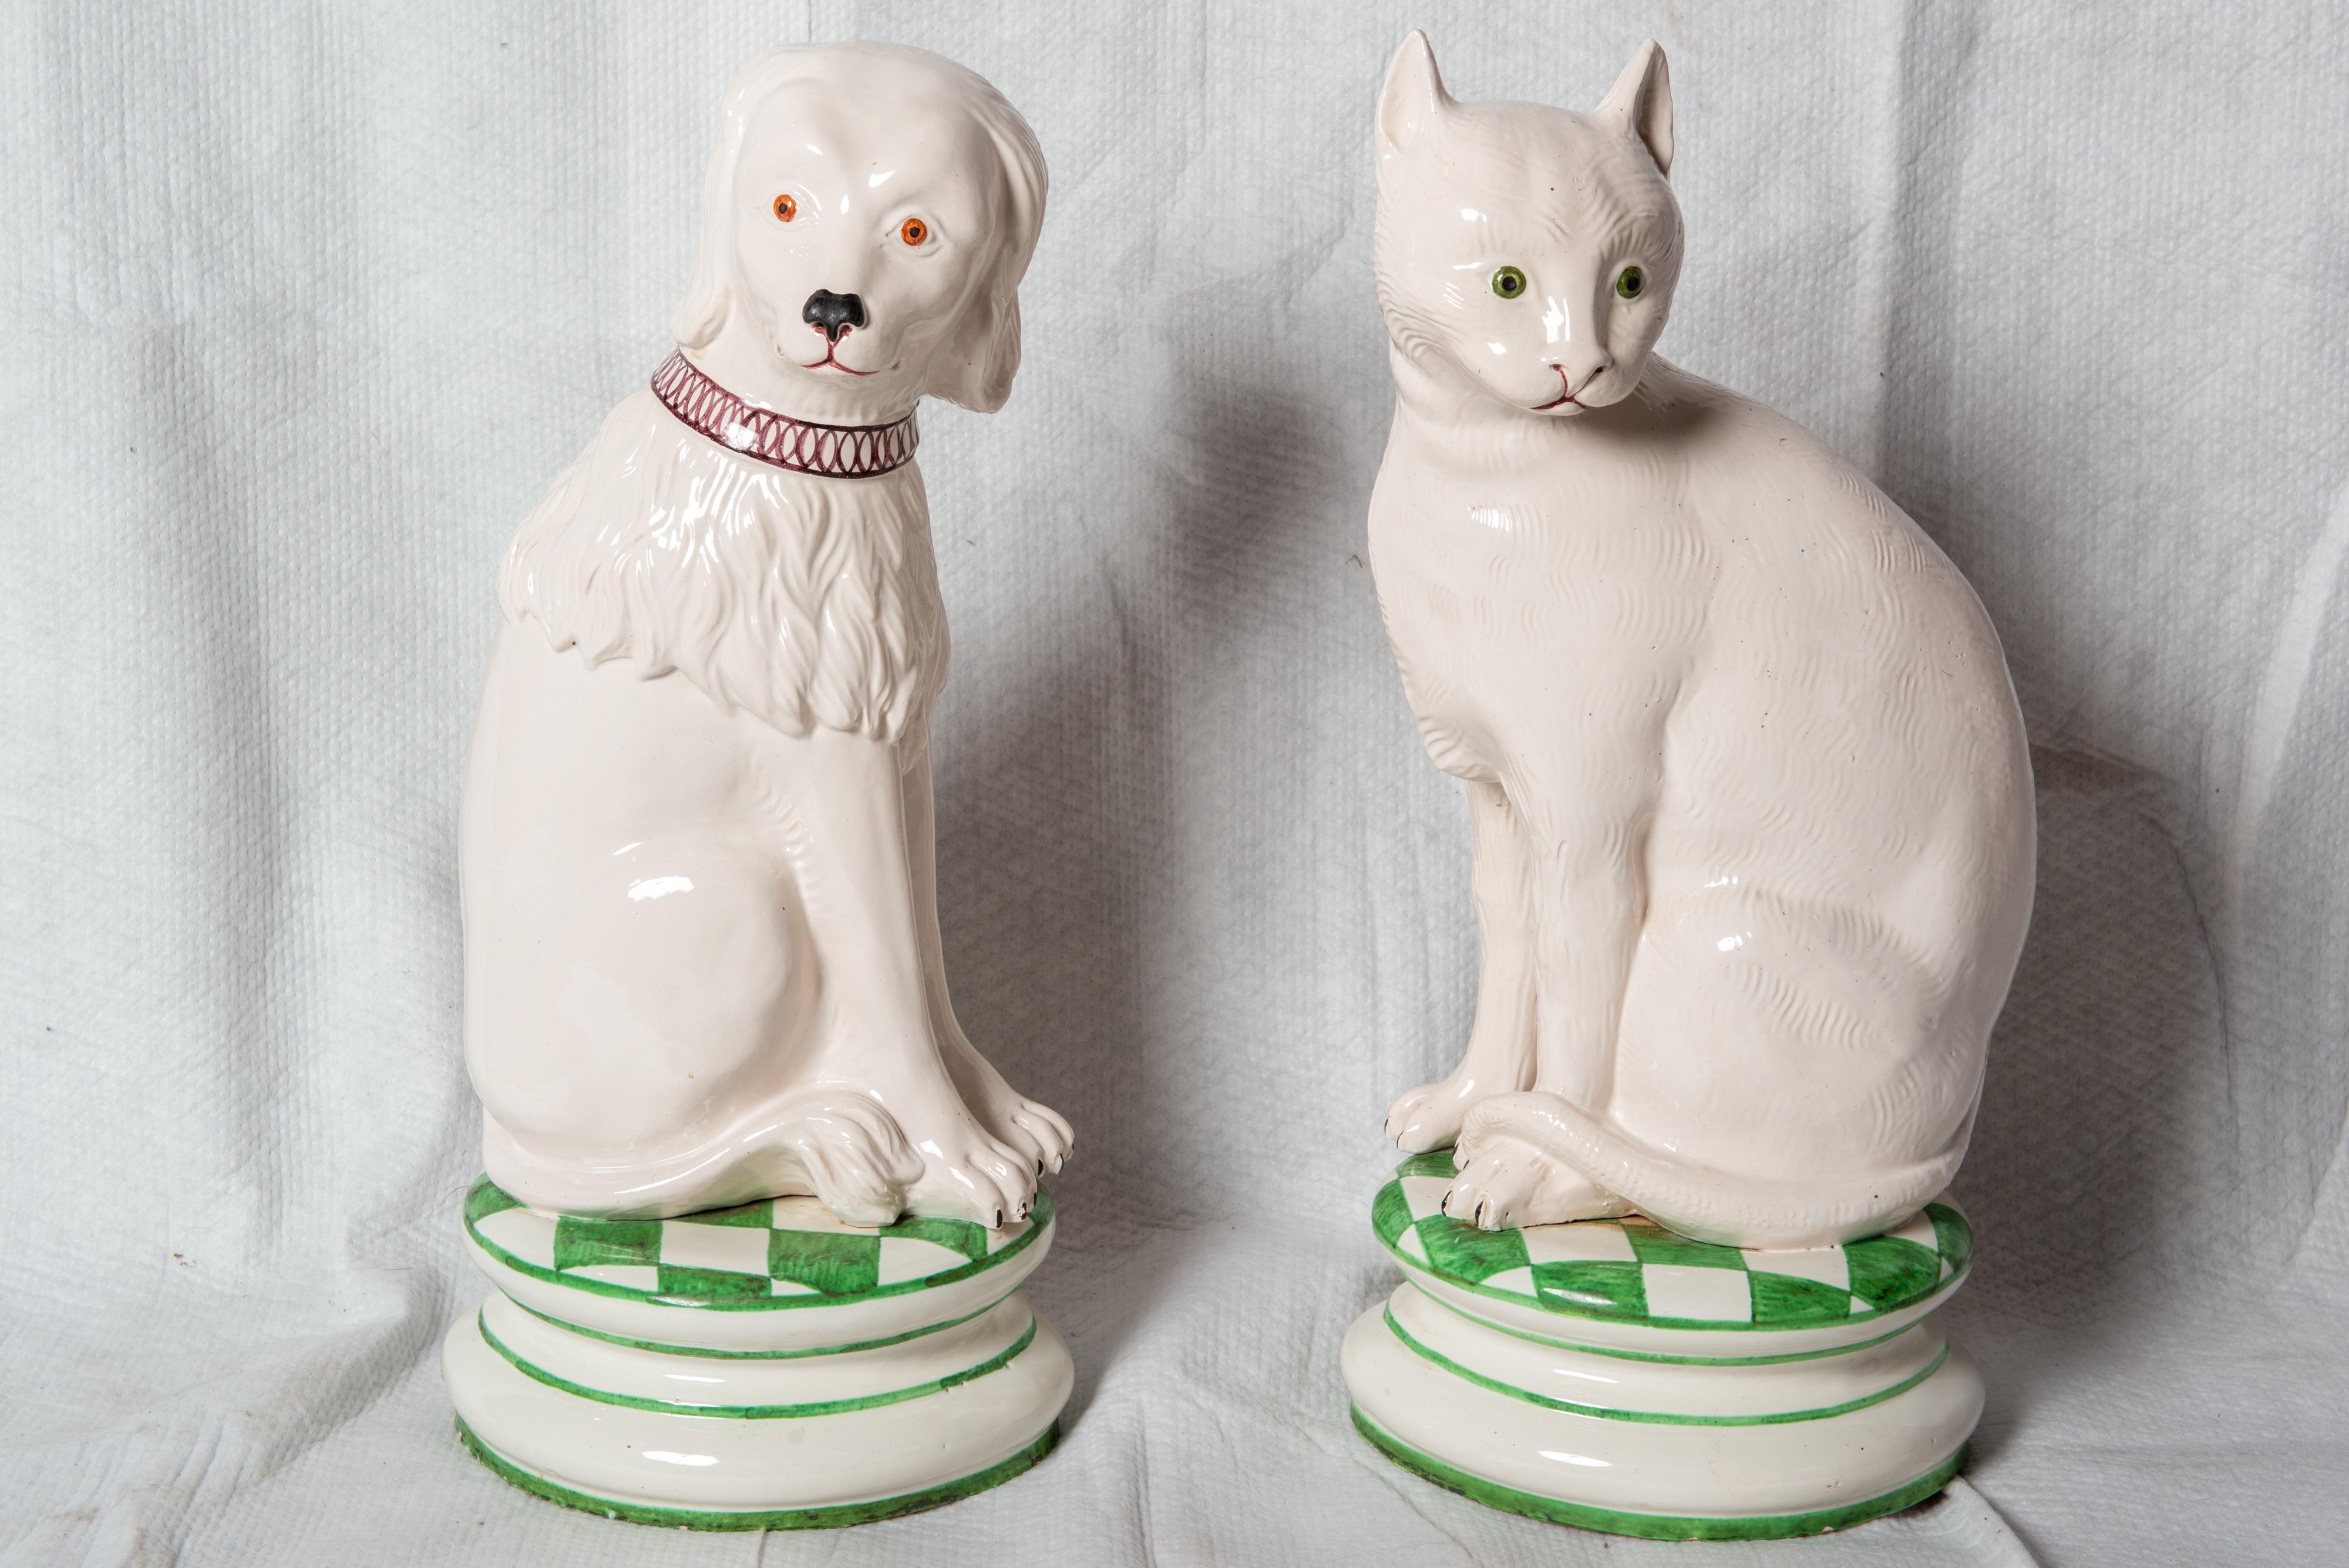 Statues de chien et de chat en céramique Whiting, perchées sur des coussins à carreaux verts et blancs. Ils sont vendus à l'unité. Les deux animaux ont une fourrure blanche. Le chien a une longue fourrure ondulée autour du cou et des épaules et une